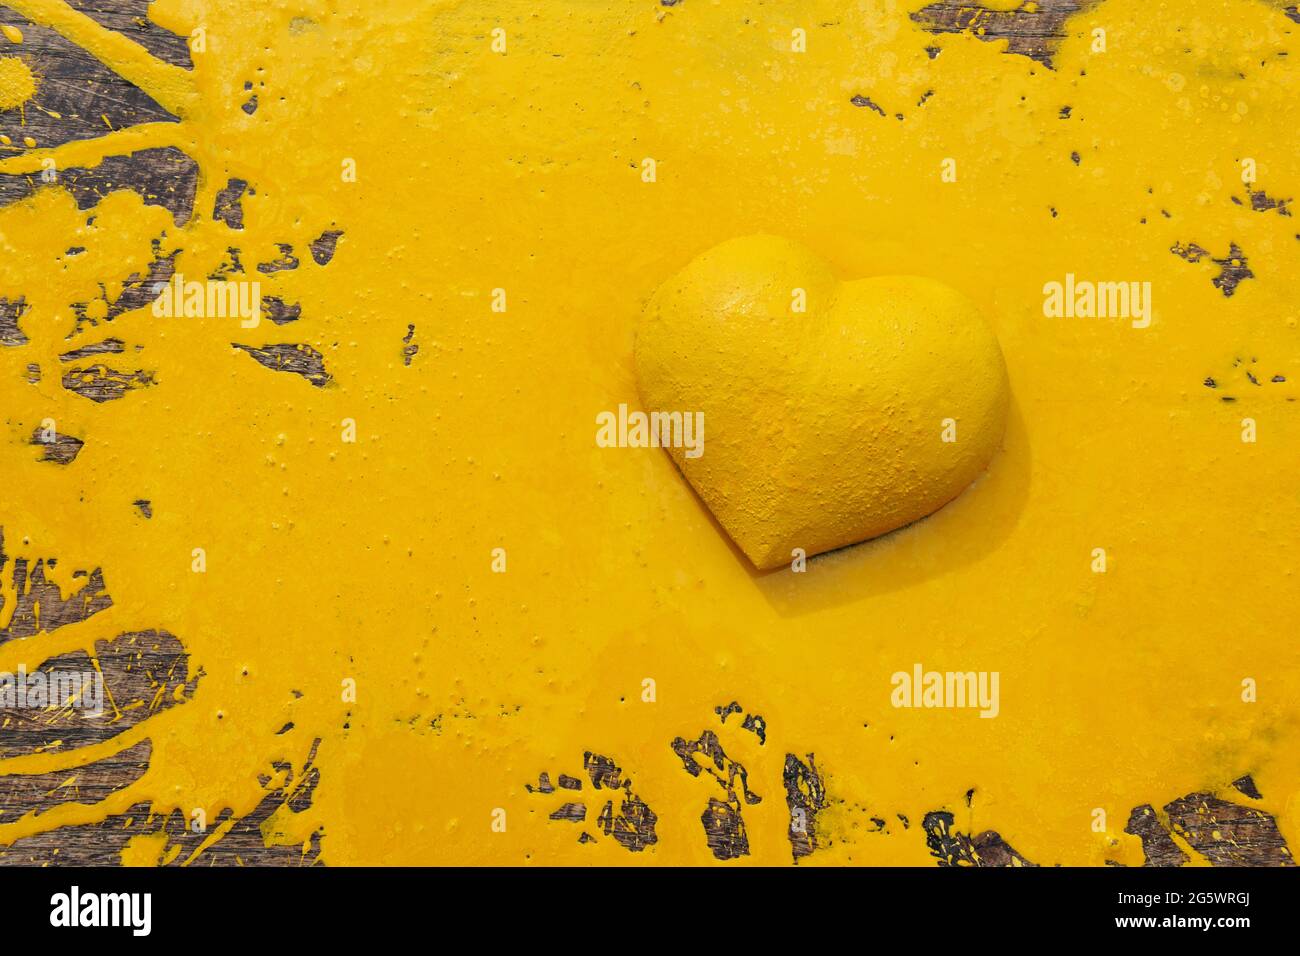 Heaart jaune. Forme de coeur en 3 dimensions sur panneau de bois naturel, lamelée de peinture jaune. Banque D'Images